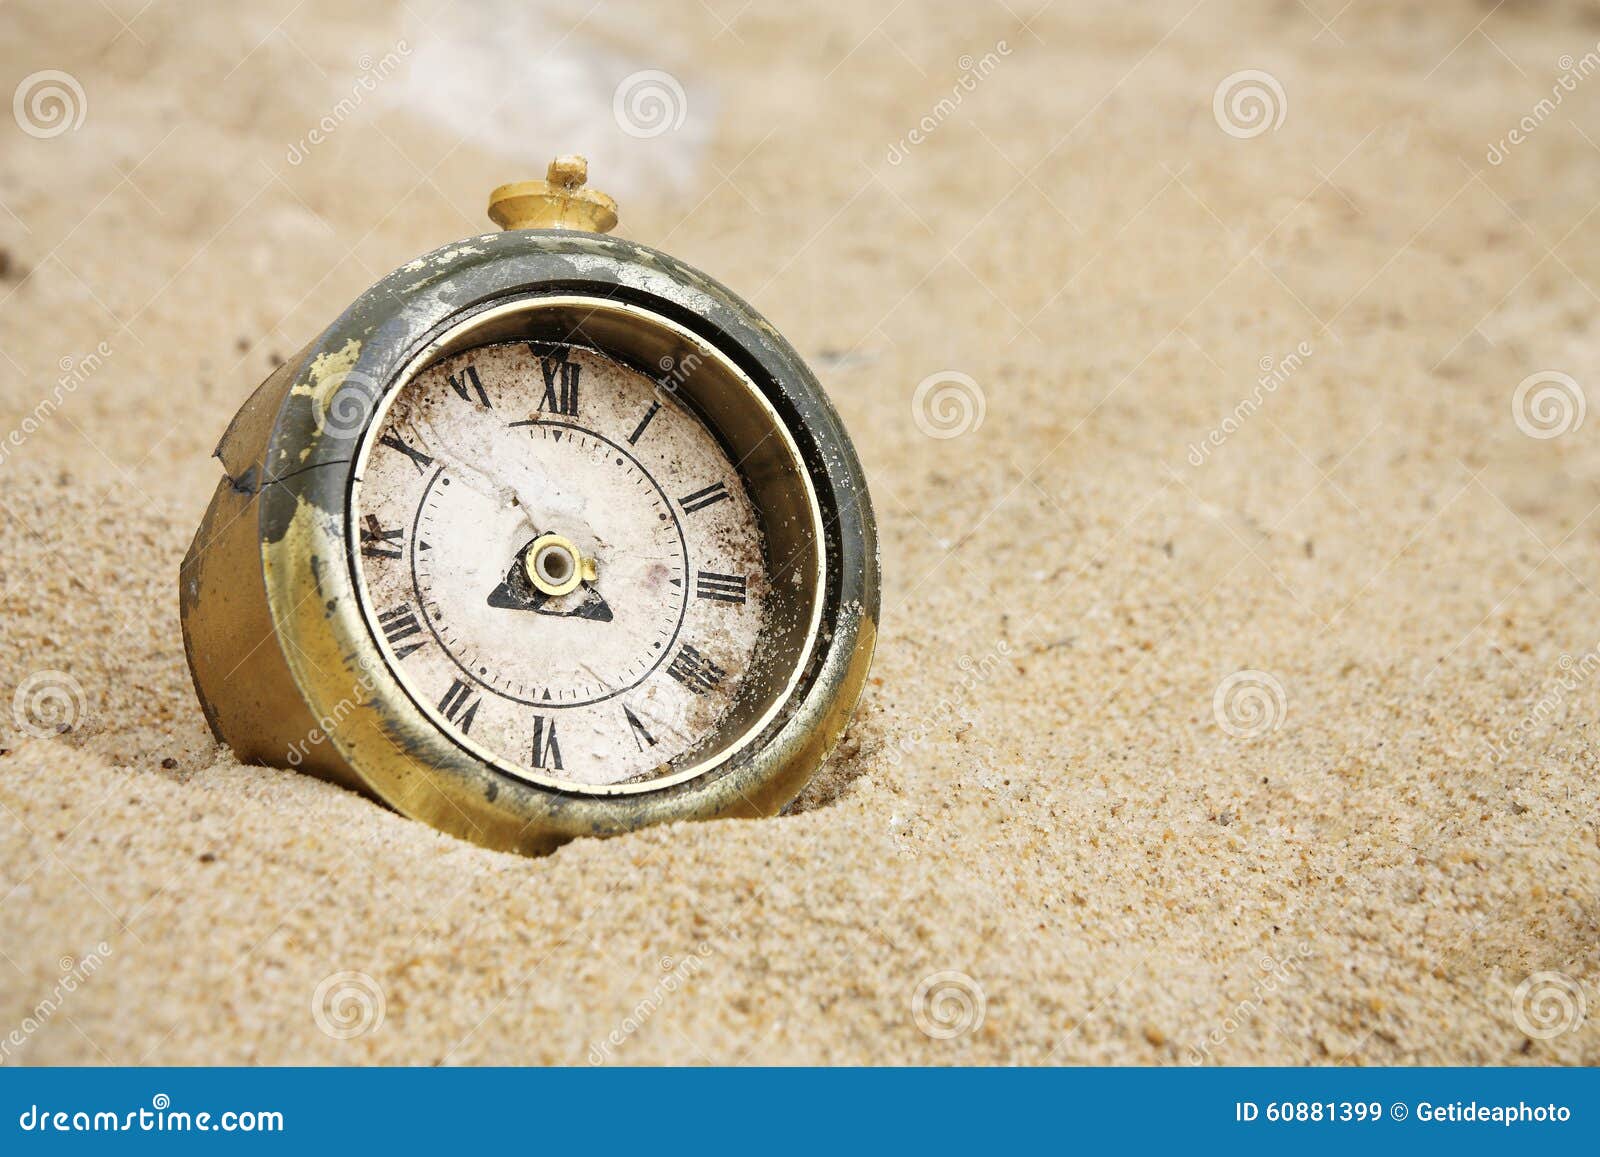 Reloj quebrado. Reloj roto viejo enterrado en arena